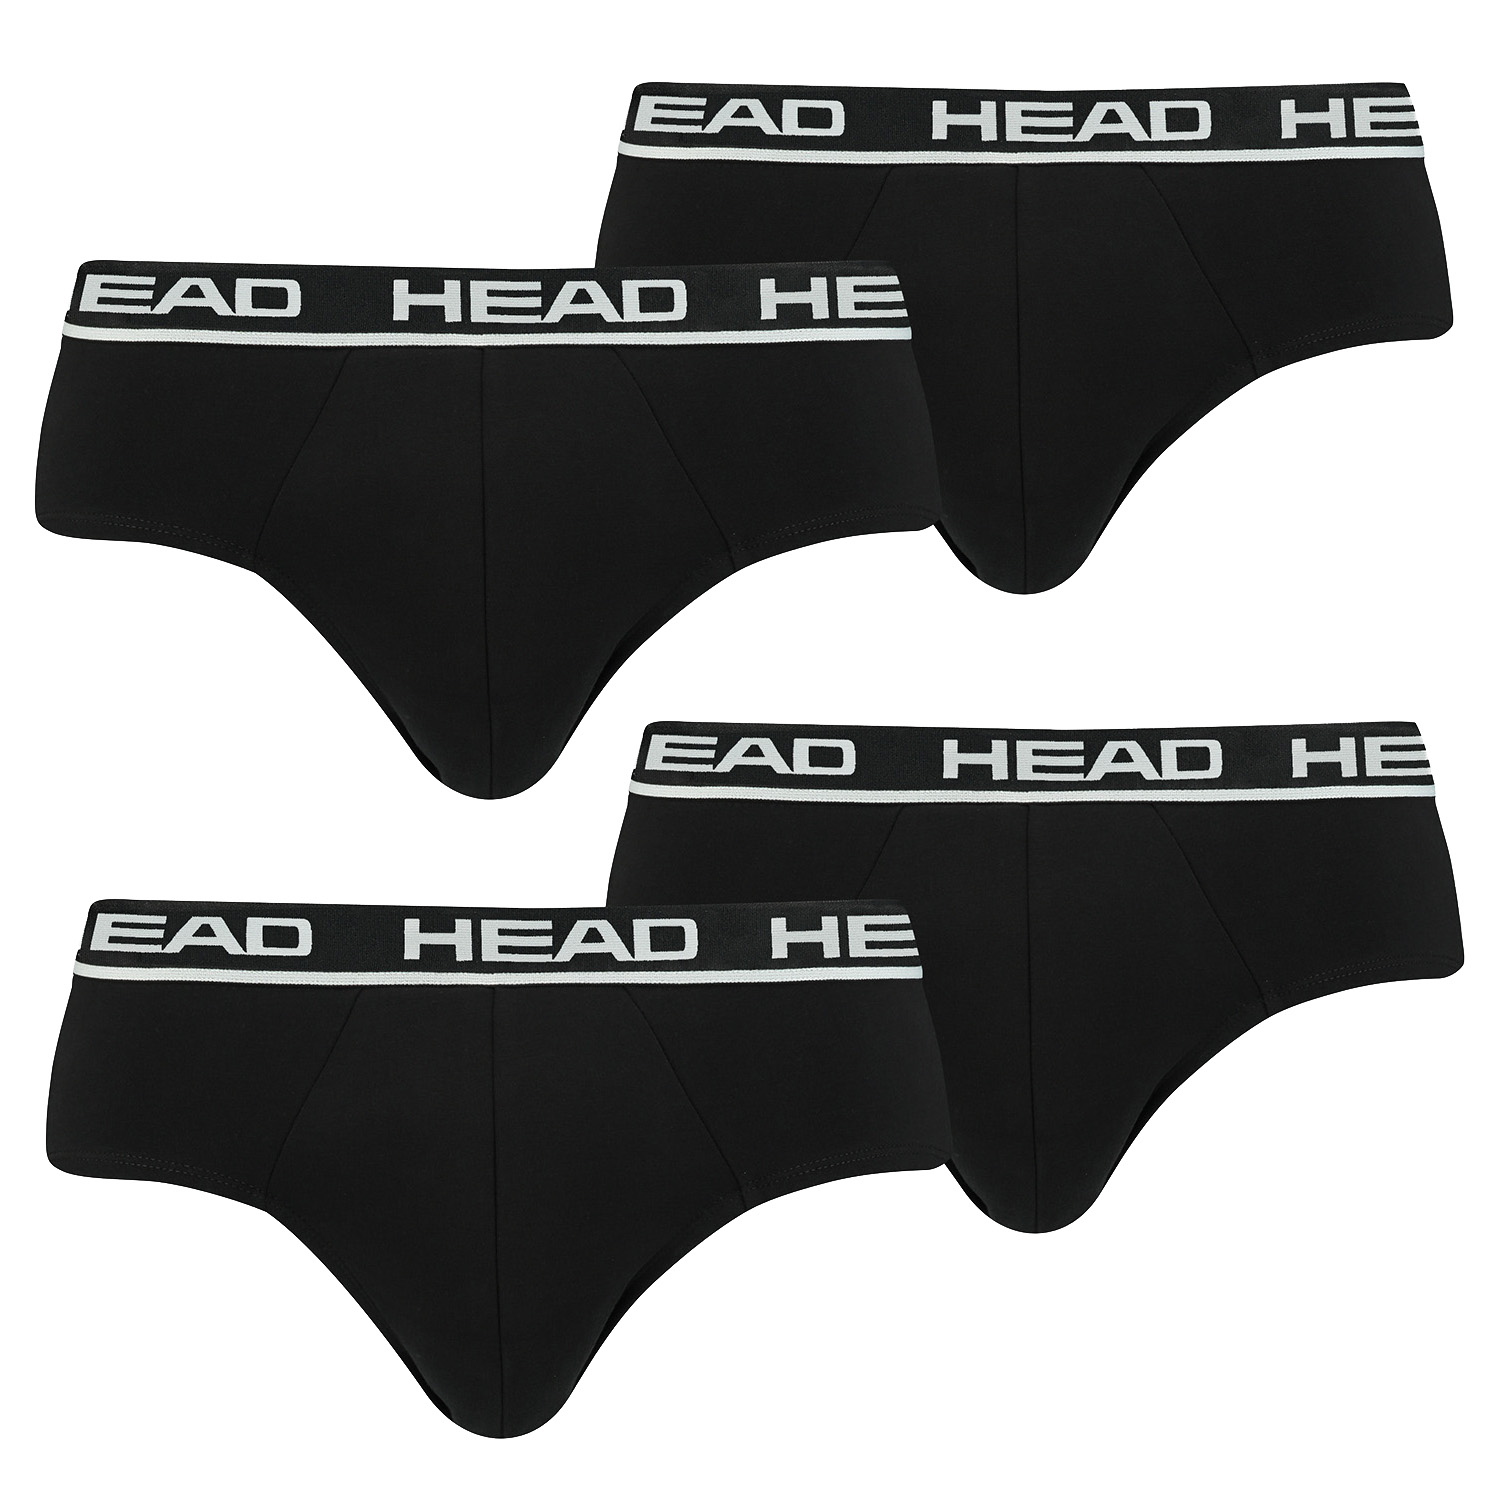 HEAD Herren Basic Brief Pant Slip Unterwäsche Unterhose 6 er Pack , Farbe:002 - Black, Bekleidungsgröße:XL